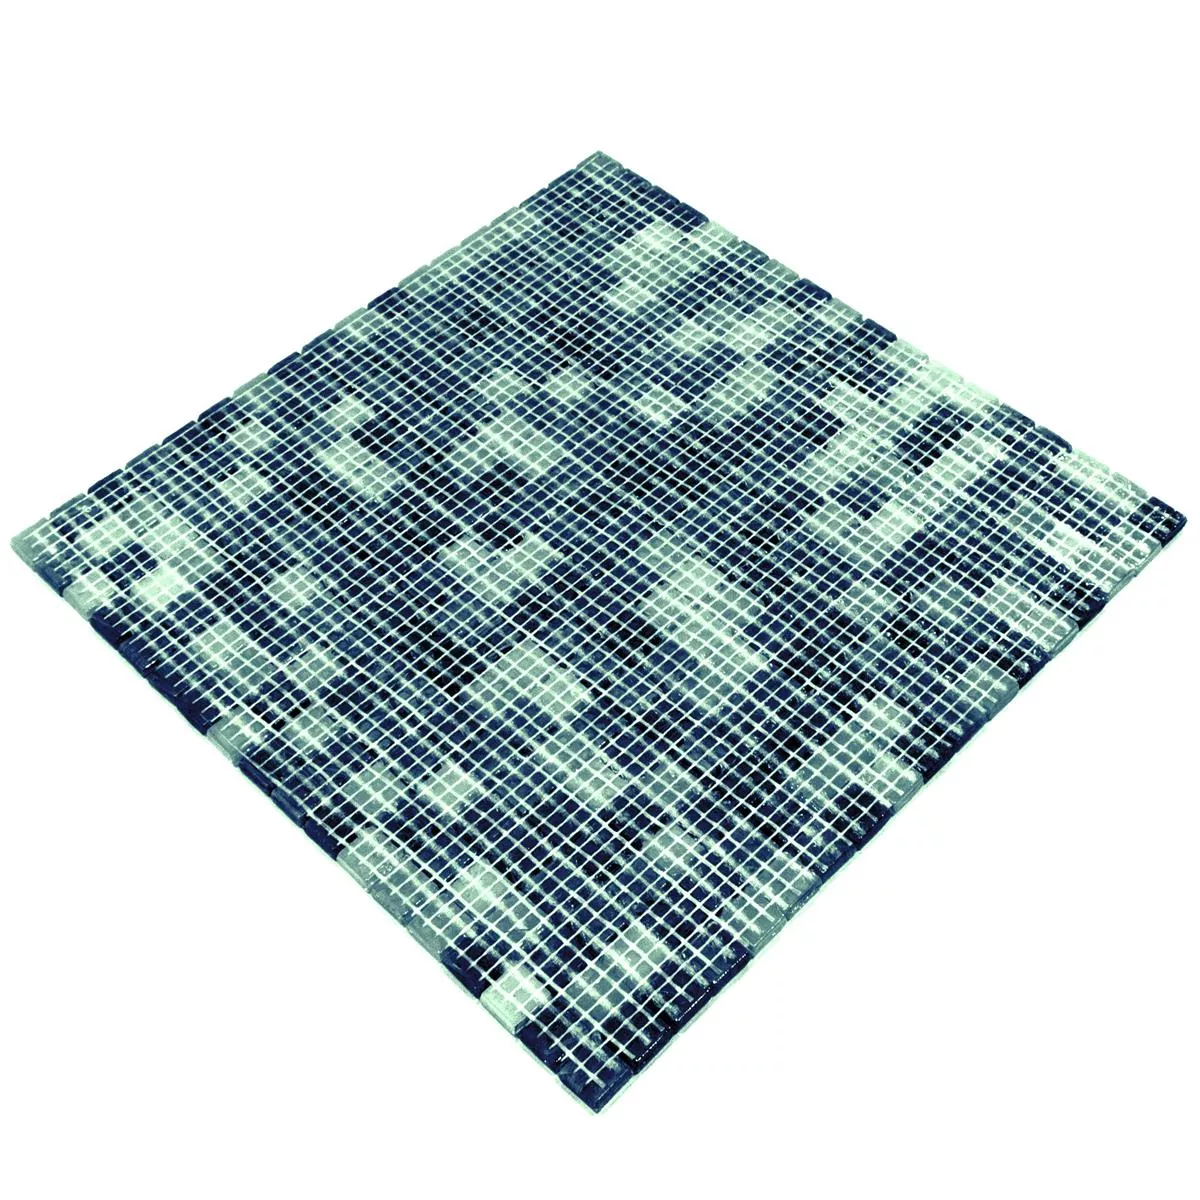 Próbka Mozaiki Szklana Płytki Catalina Niebieski Zielony Mix